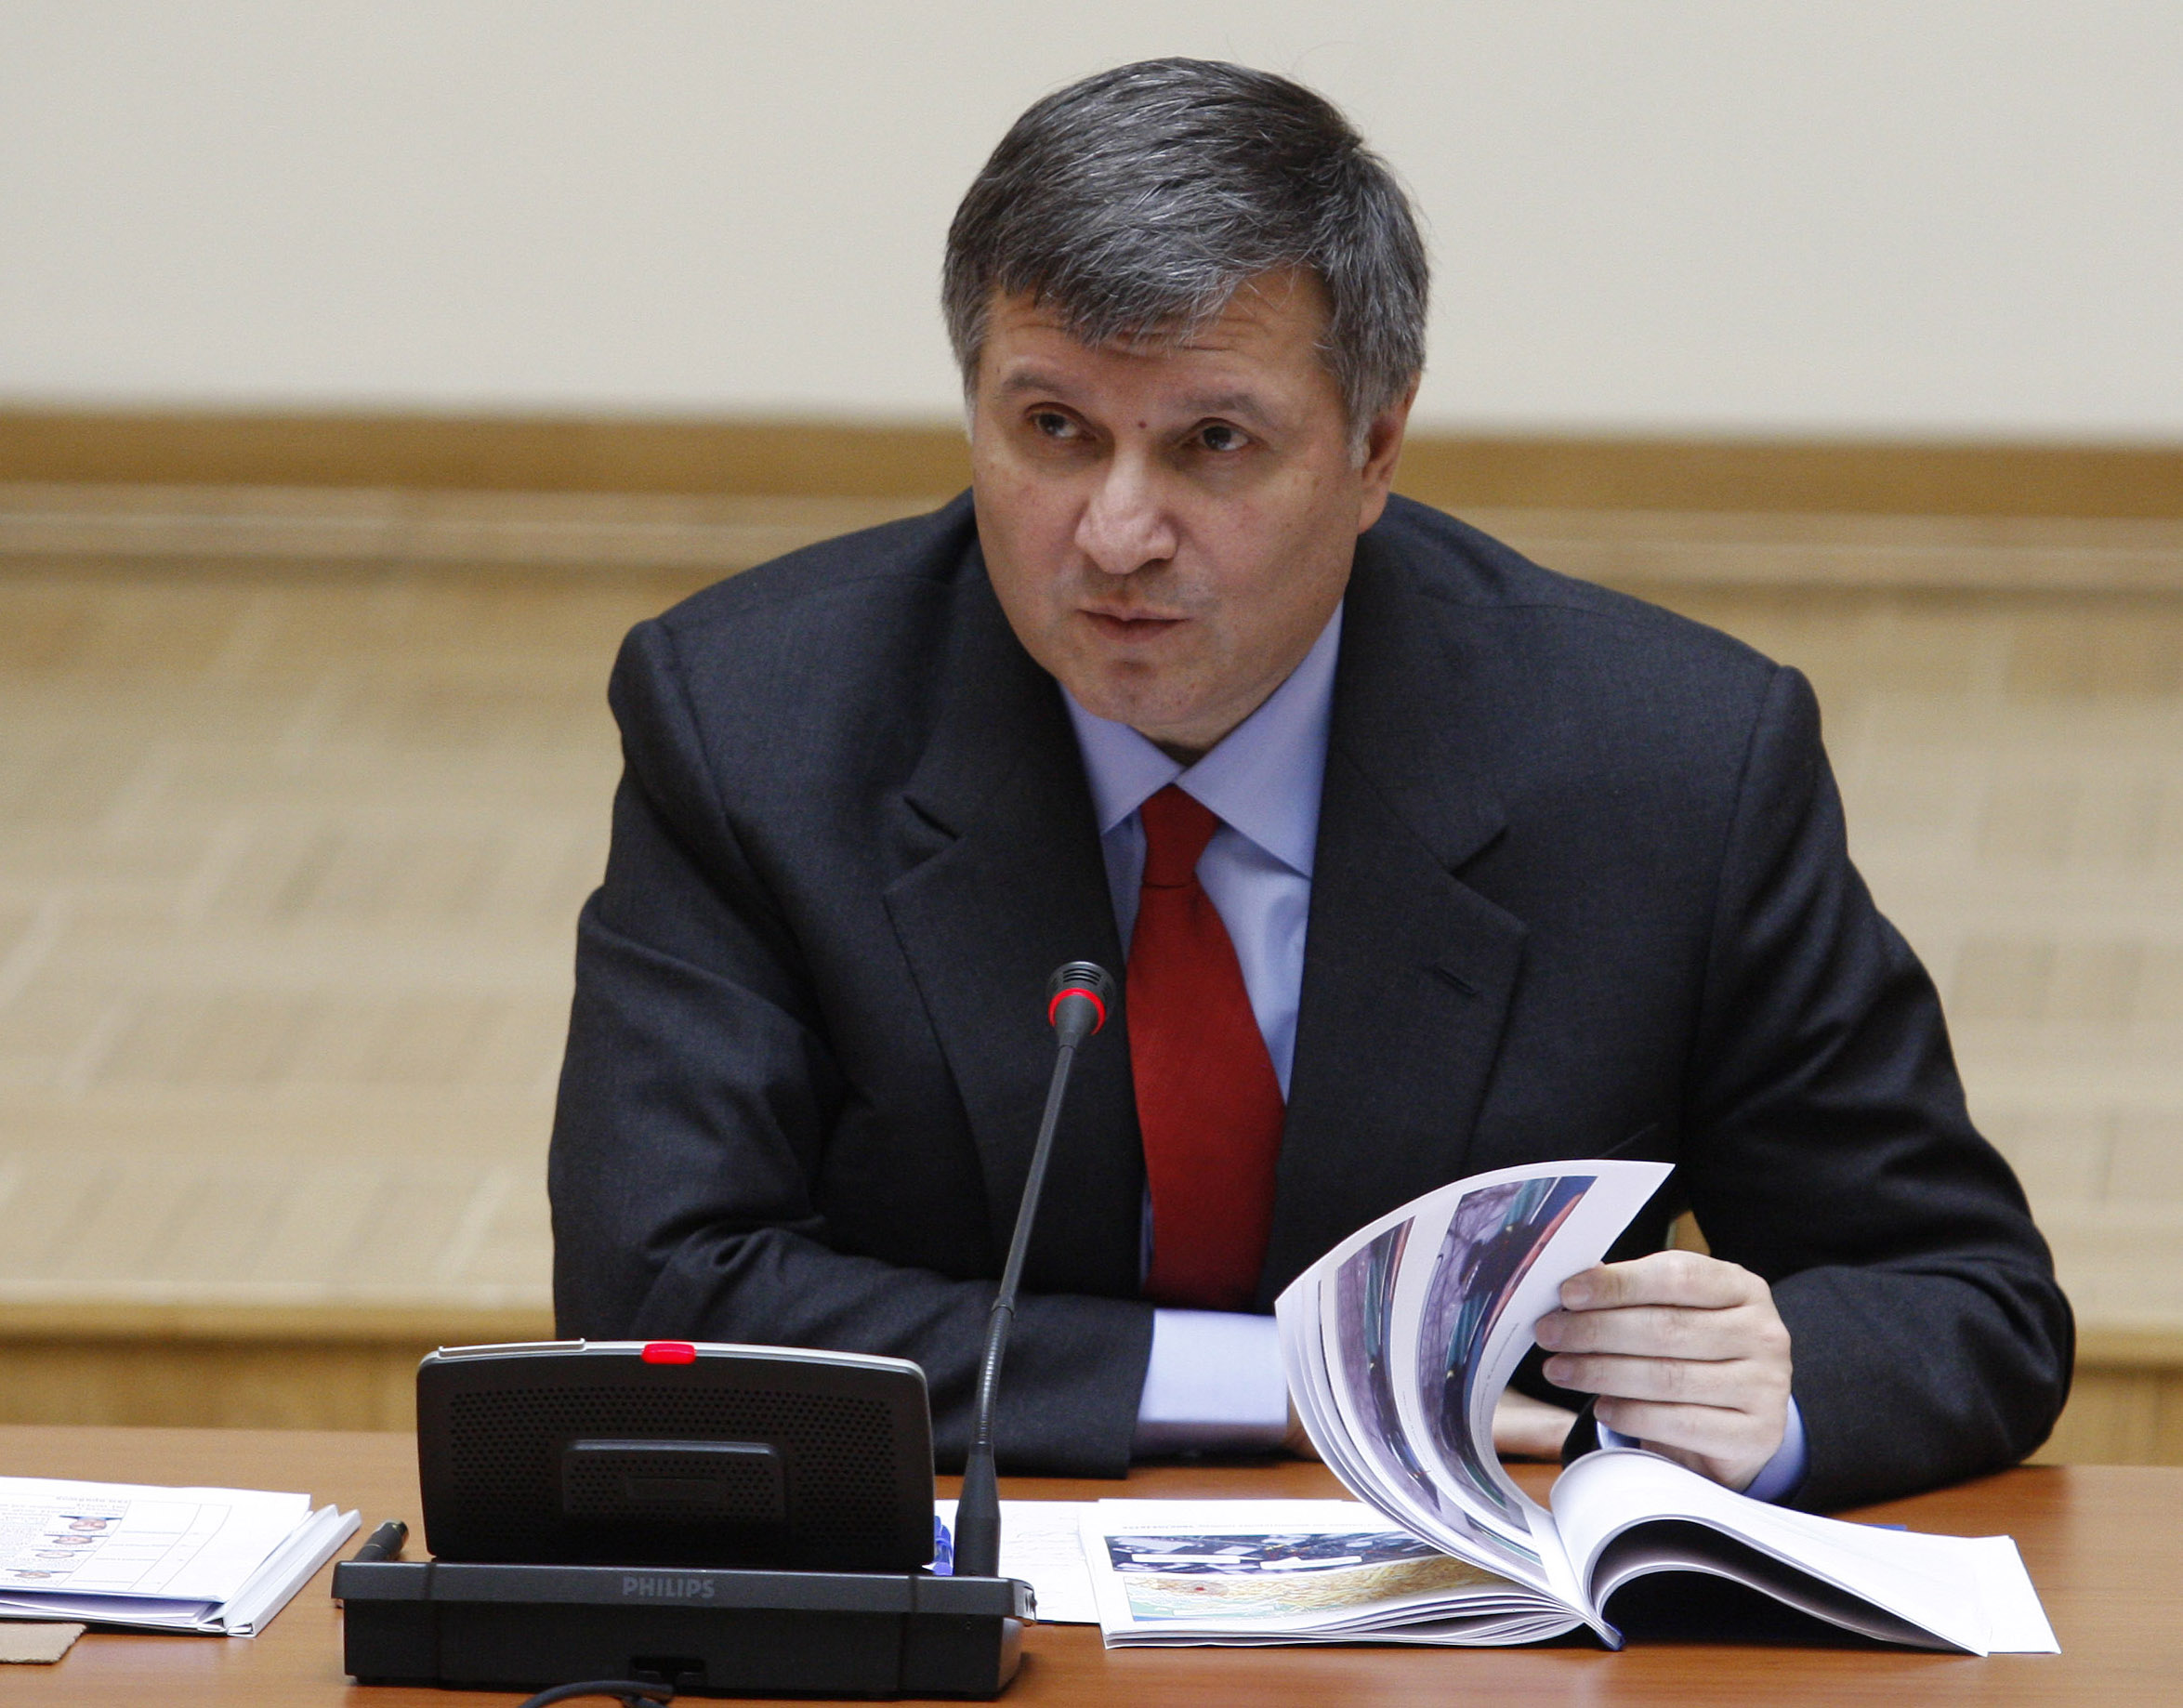 Bộ trưởng nội vụ Ukraine Avakov liệt kê số tiền và các đồ vật đắt tiền tịch thu được từ các cựu cán bộ thuế.